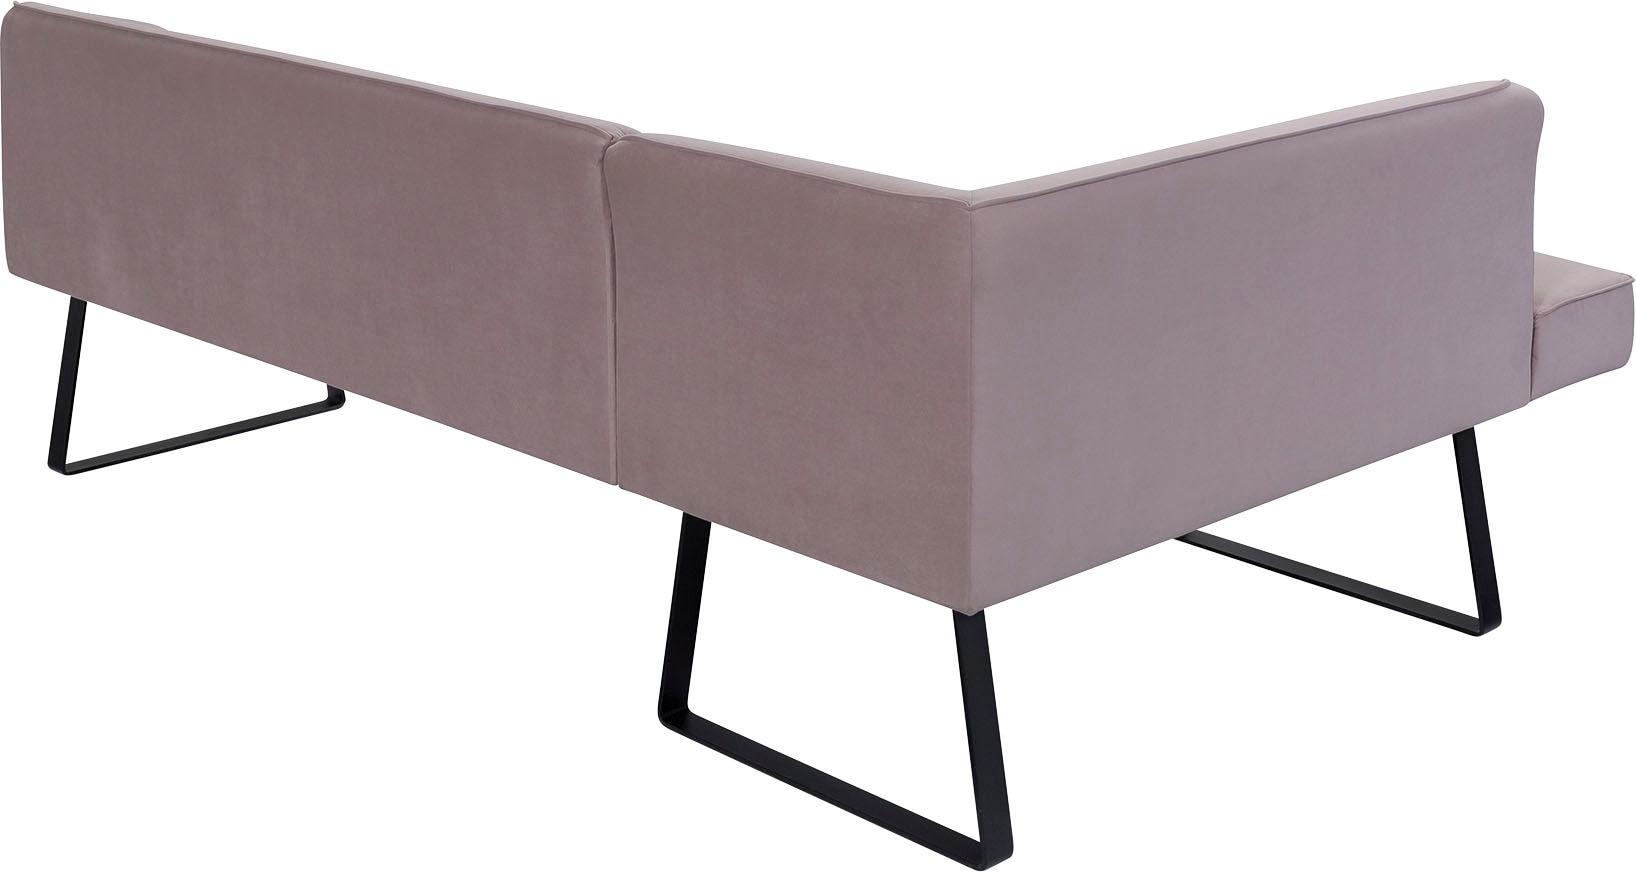 exxpo - sofa fashion Eckbank »Americano«, mit Keder und Metallfüßen, Bezug  in verschiedenen Qualitäten auf Rechnung kaufen